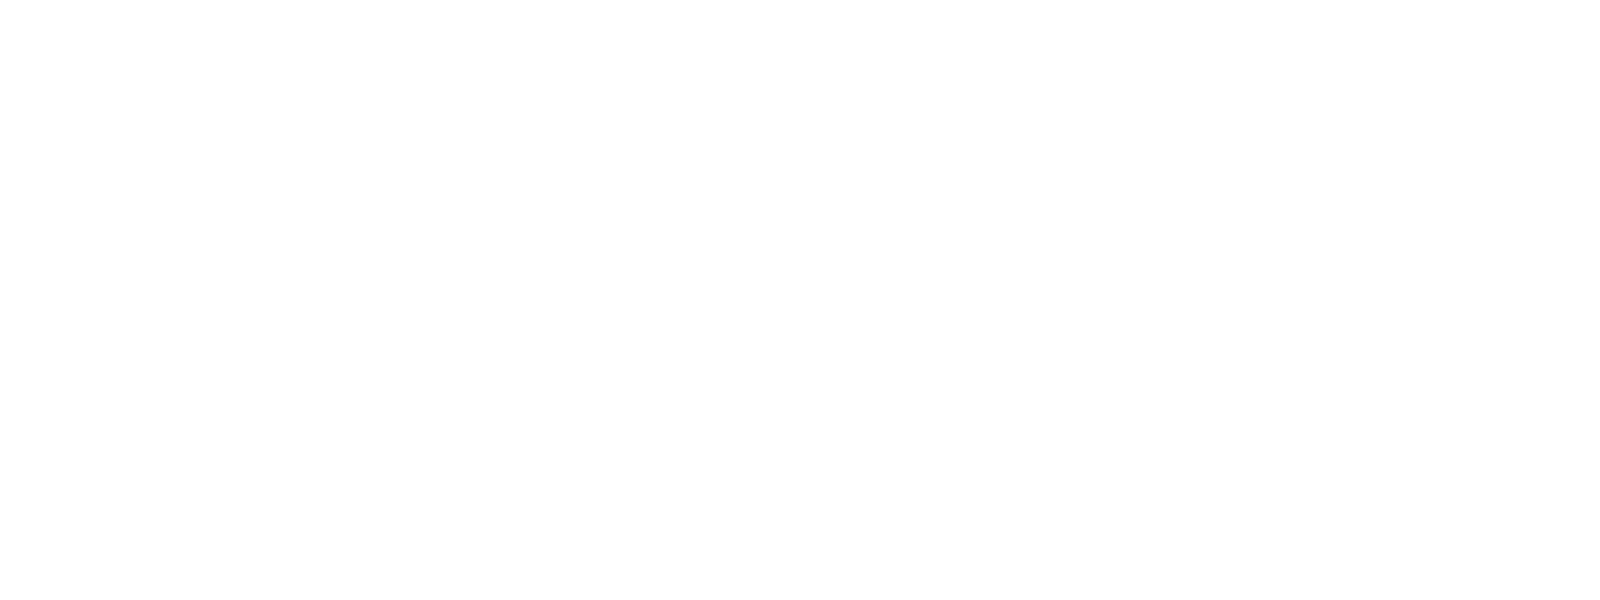 Dapp-stats-logo-white